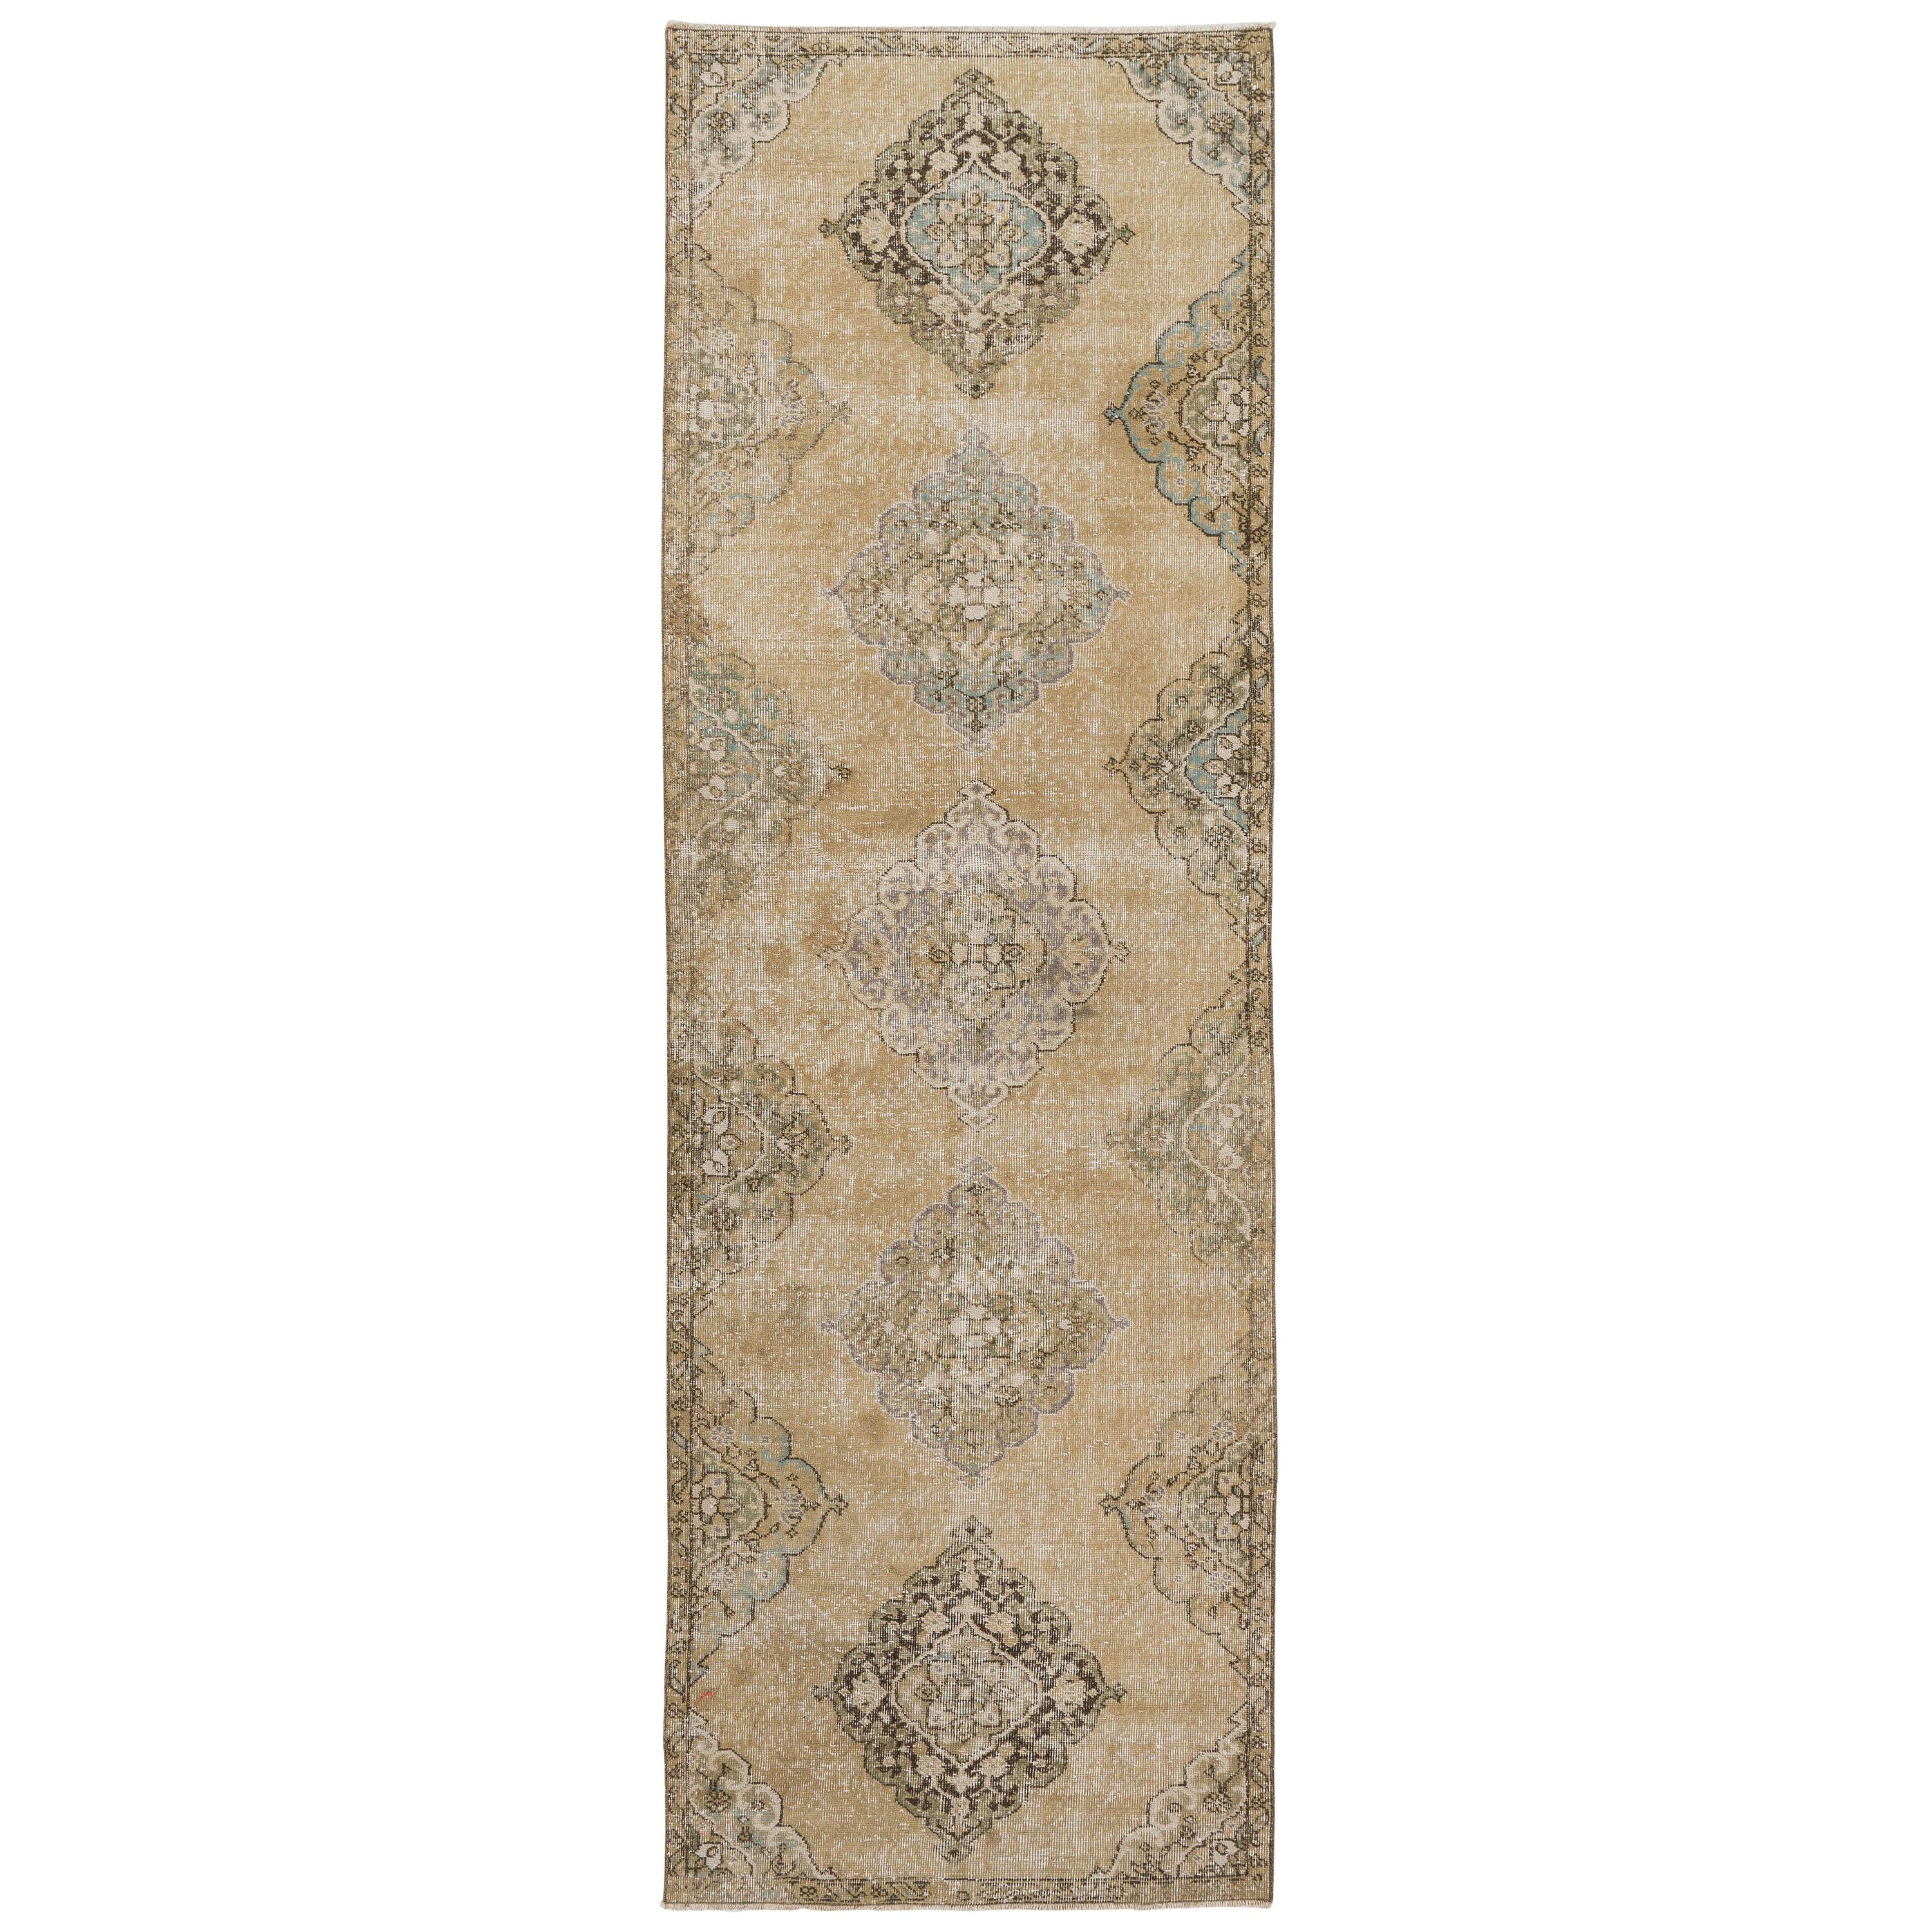 3.5x11.4 Ft  Vintage Anatolian Oushak Runner. Handmade Carpet for Hallway Decor